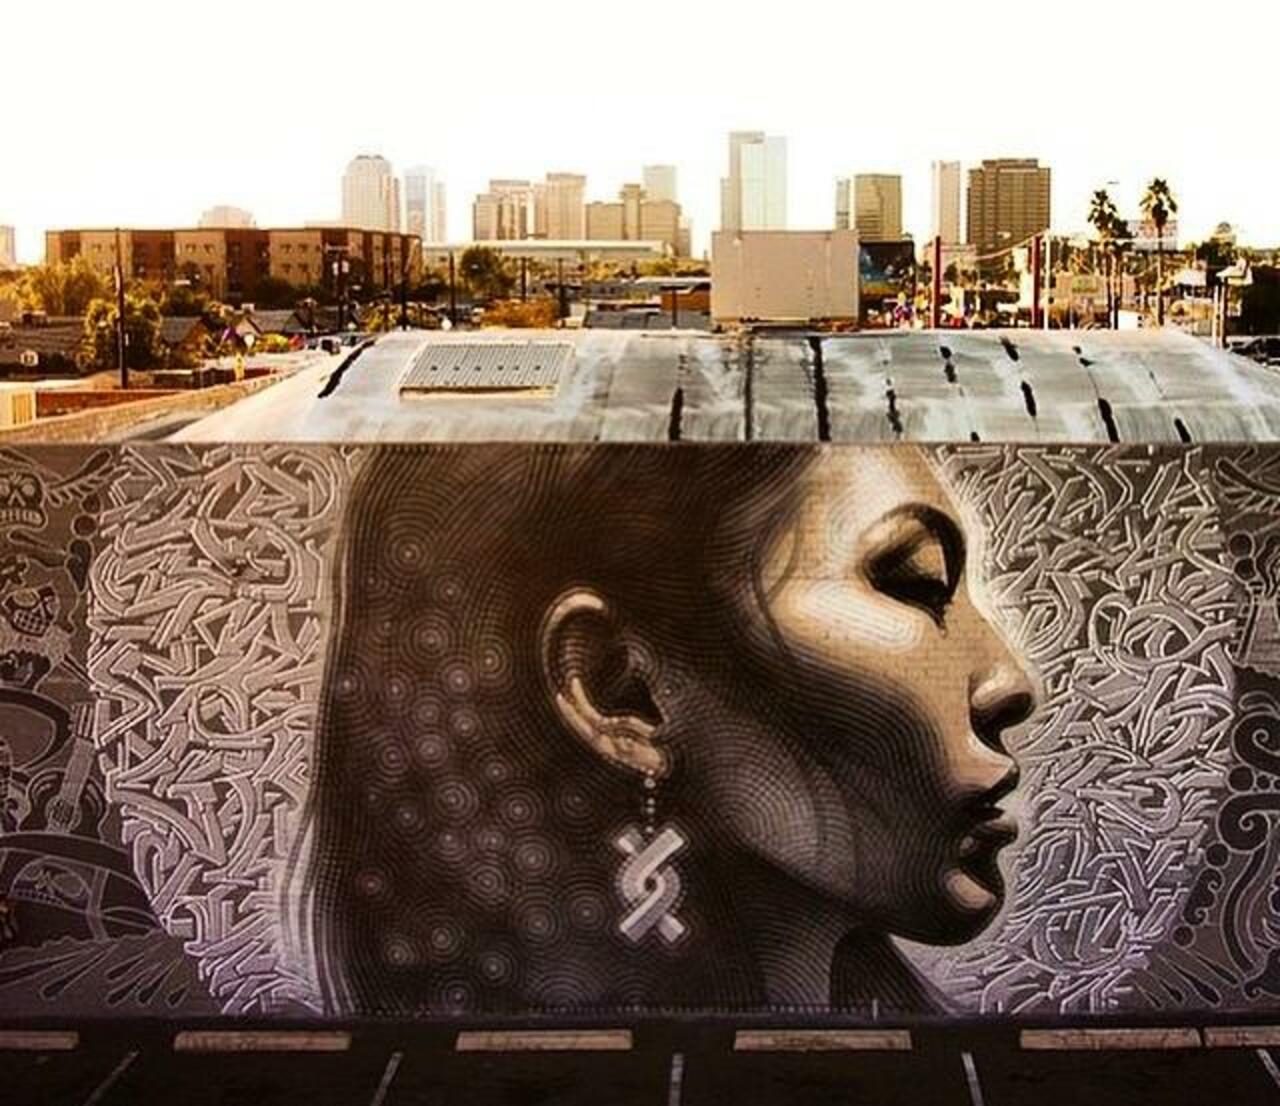 Latest Street Art work by El Mac in Phoenix, Arizona

#art #mural #graffiti #streetart http://t.co/FSjVvou3Ob